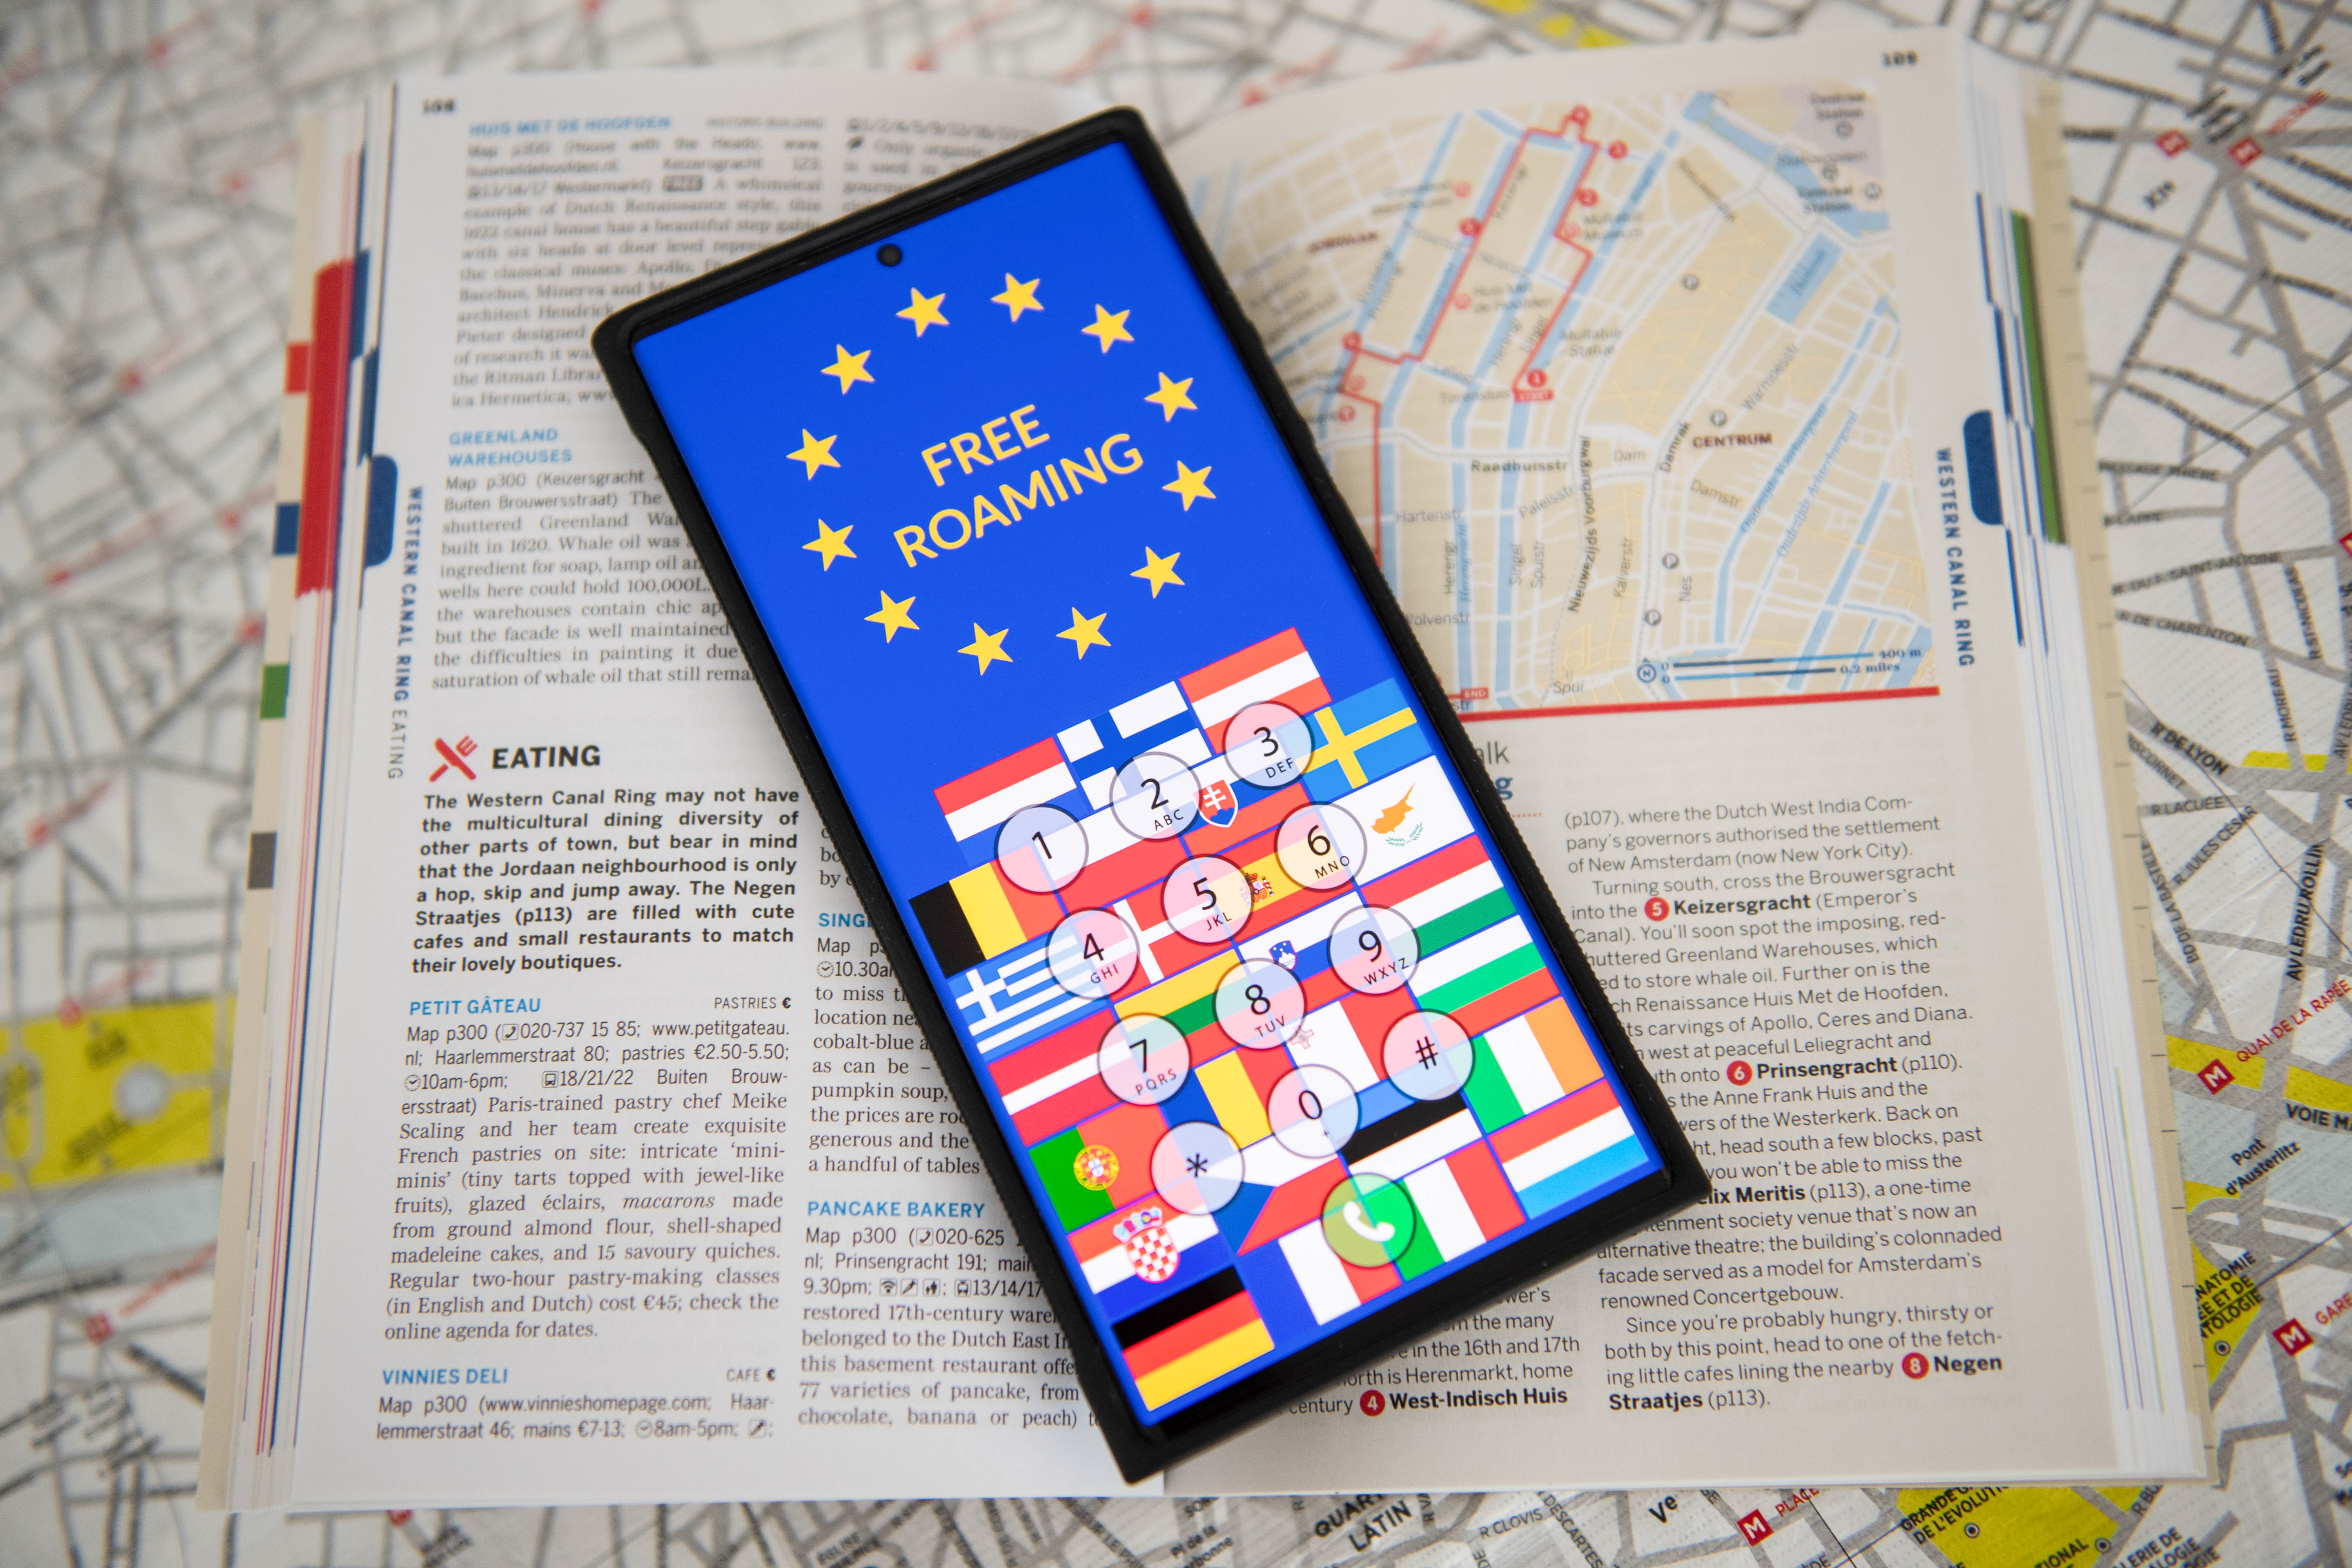 Nowe przepisy dotyczące roamingu dla podróżnych w UE: korzystanie z telefonu za granicą tak jak w kraju przez kolejne 10 lat